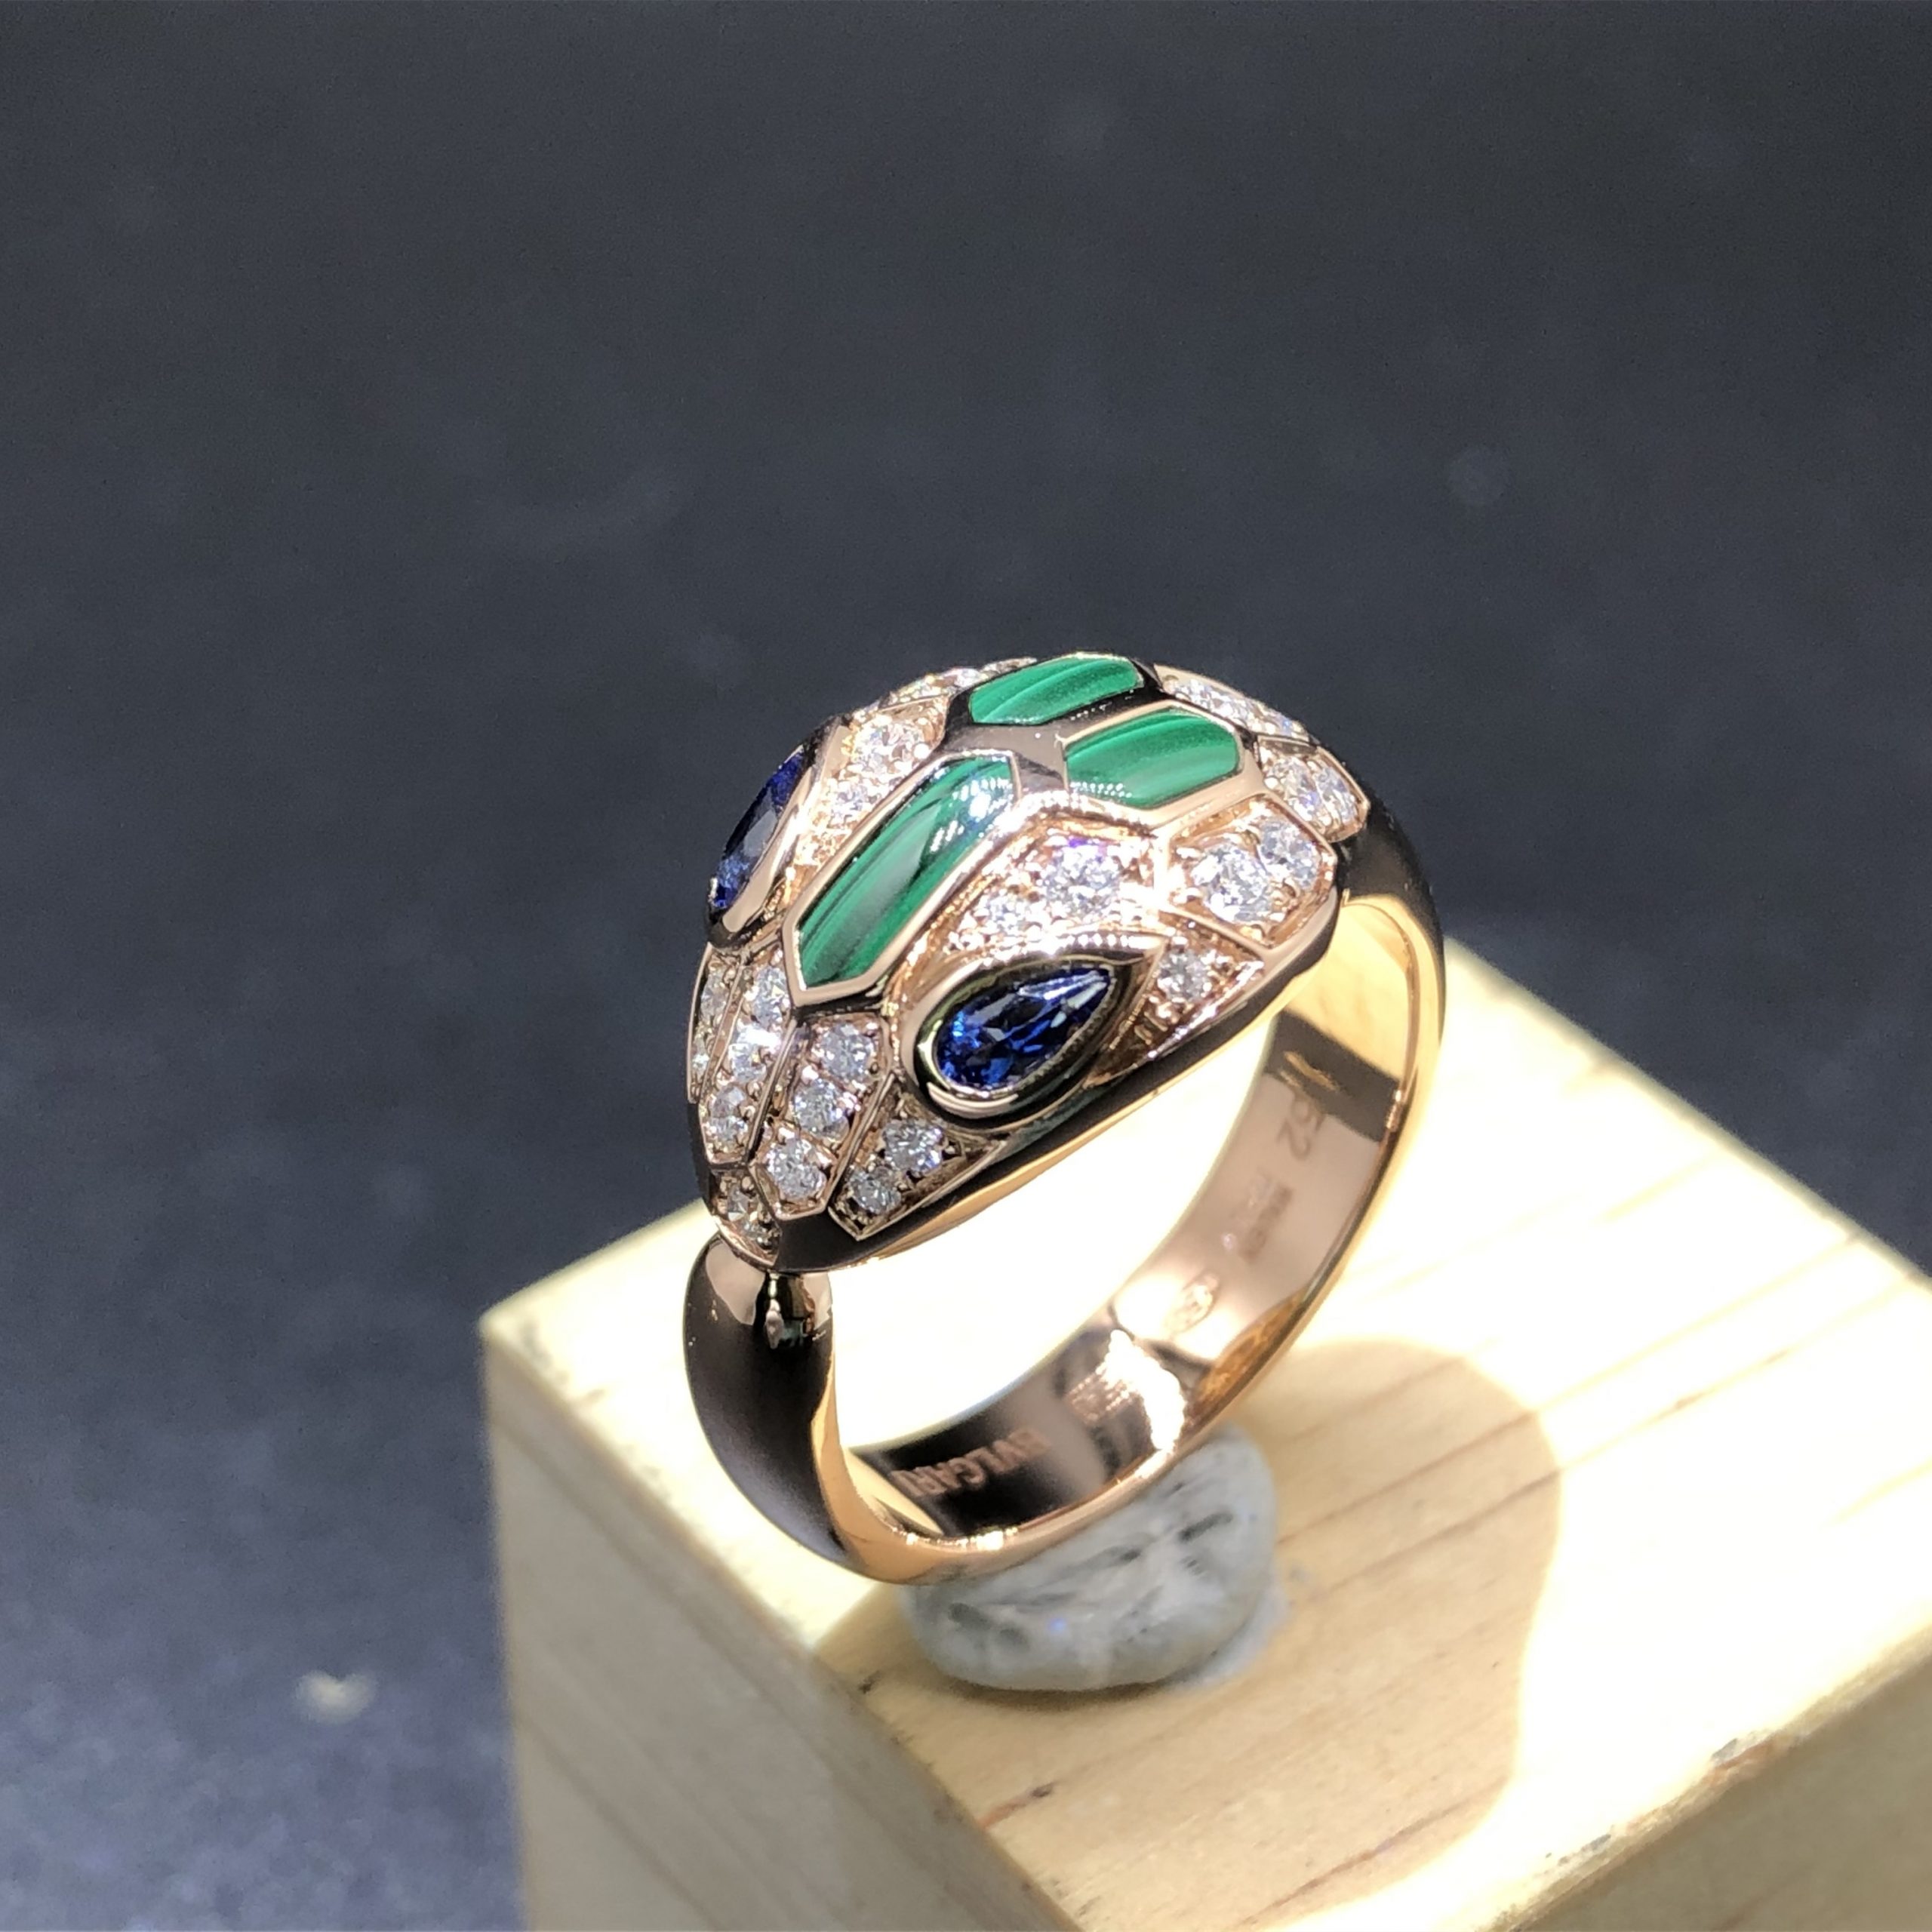 خاتم بلغاري سيربنتي مخصص مصنوع من الذهب الوردي عيار 18 قيراطًا بعيون من الياقوت الأزرق,الماس الملكيت وبافيه